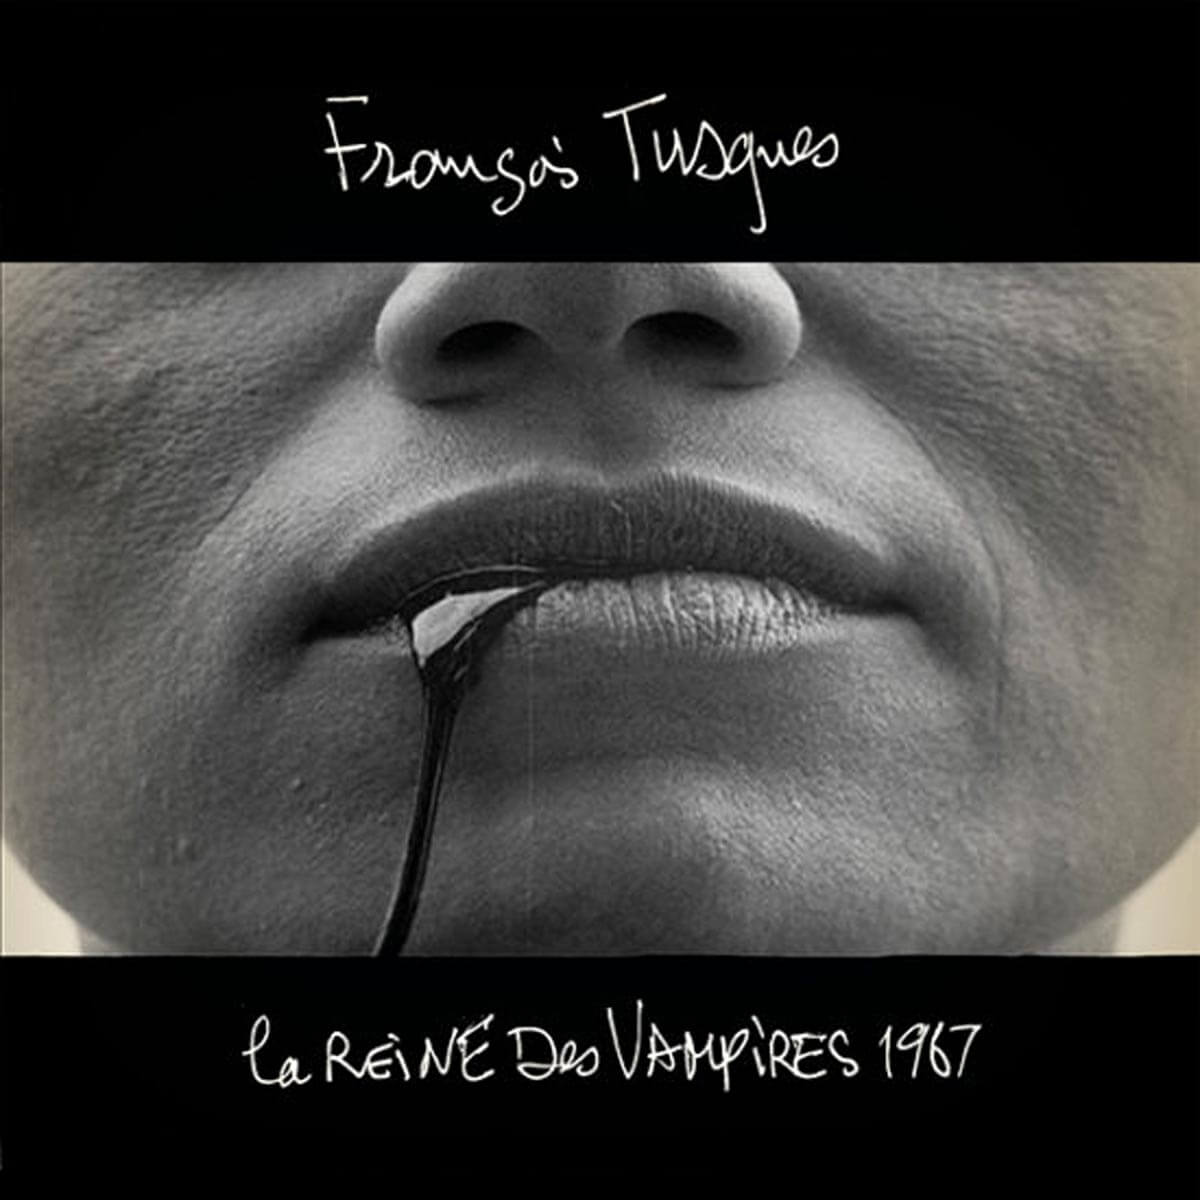 francois tusques la reine des vampires 1967 vinyl lp